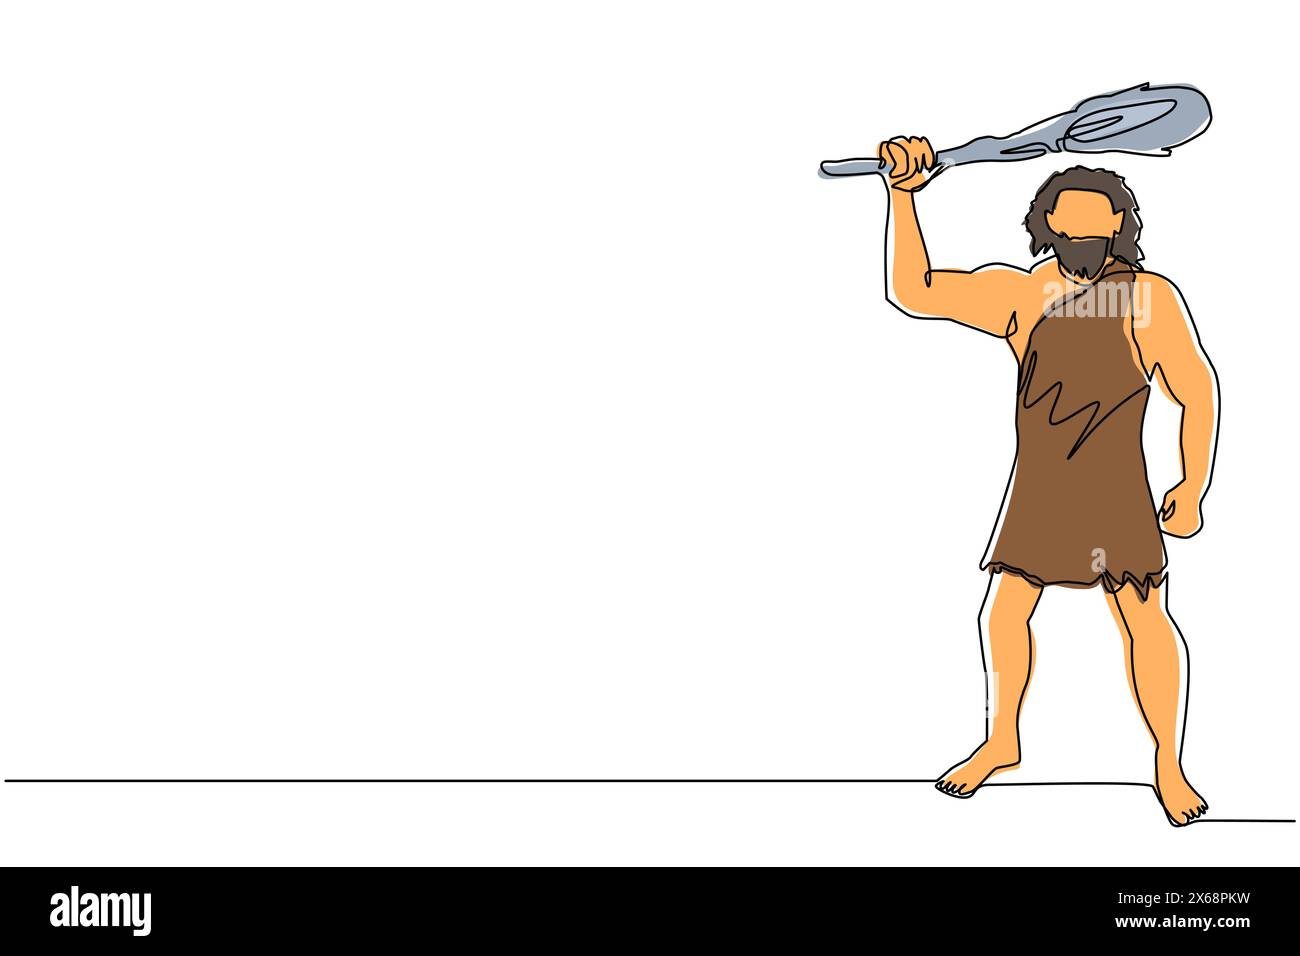 Eine einzige Linie, die prähistorischen Mann hält und Knüppel über dem Kopf hochgehoben hat. Ein Mann jagt ein altes Tier mit Knüppel, Höhlenmensch aus prähistorischer Zeit Stock Vektor